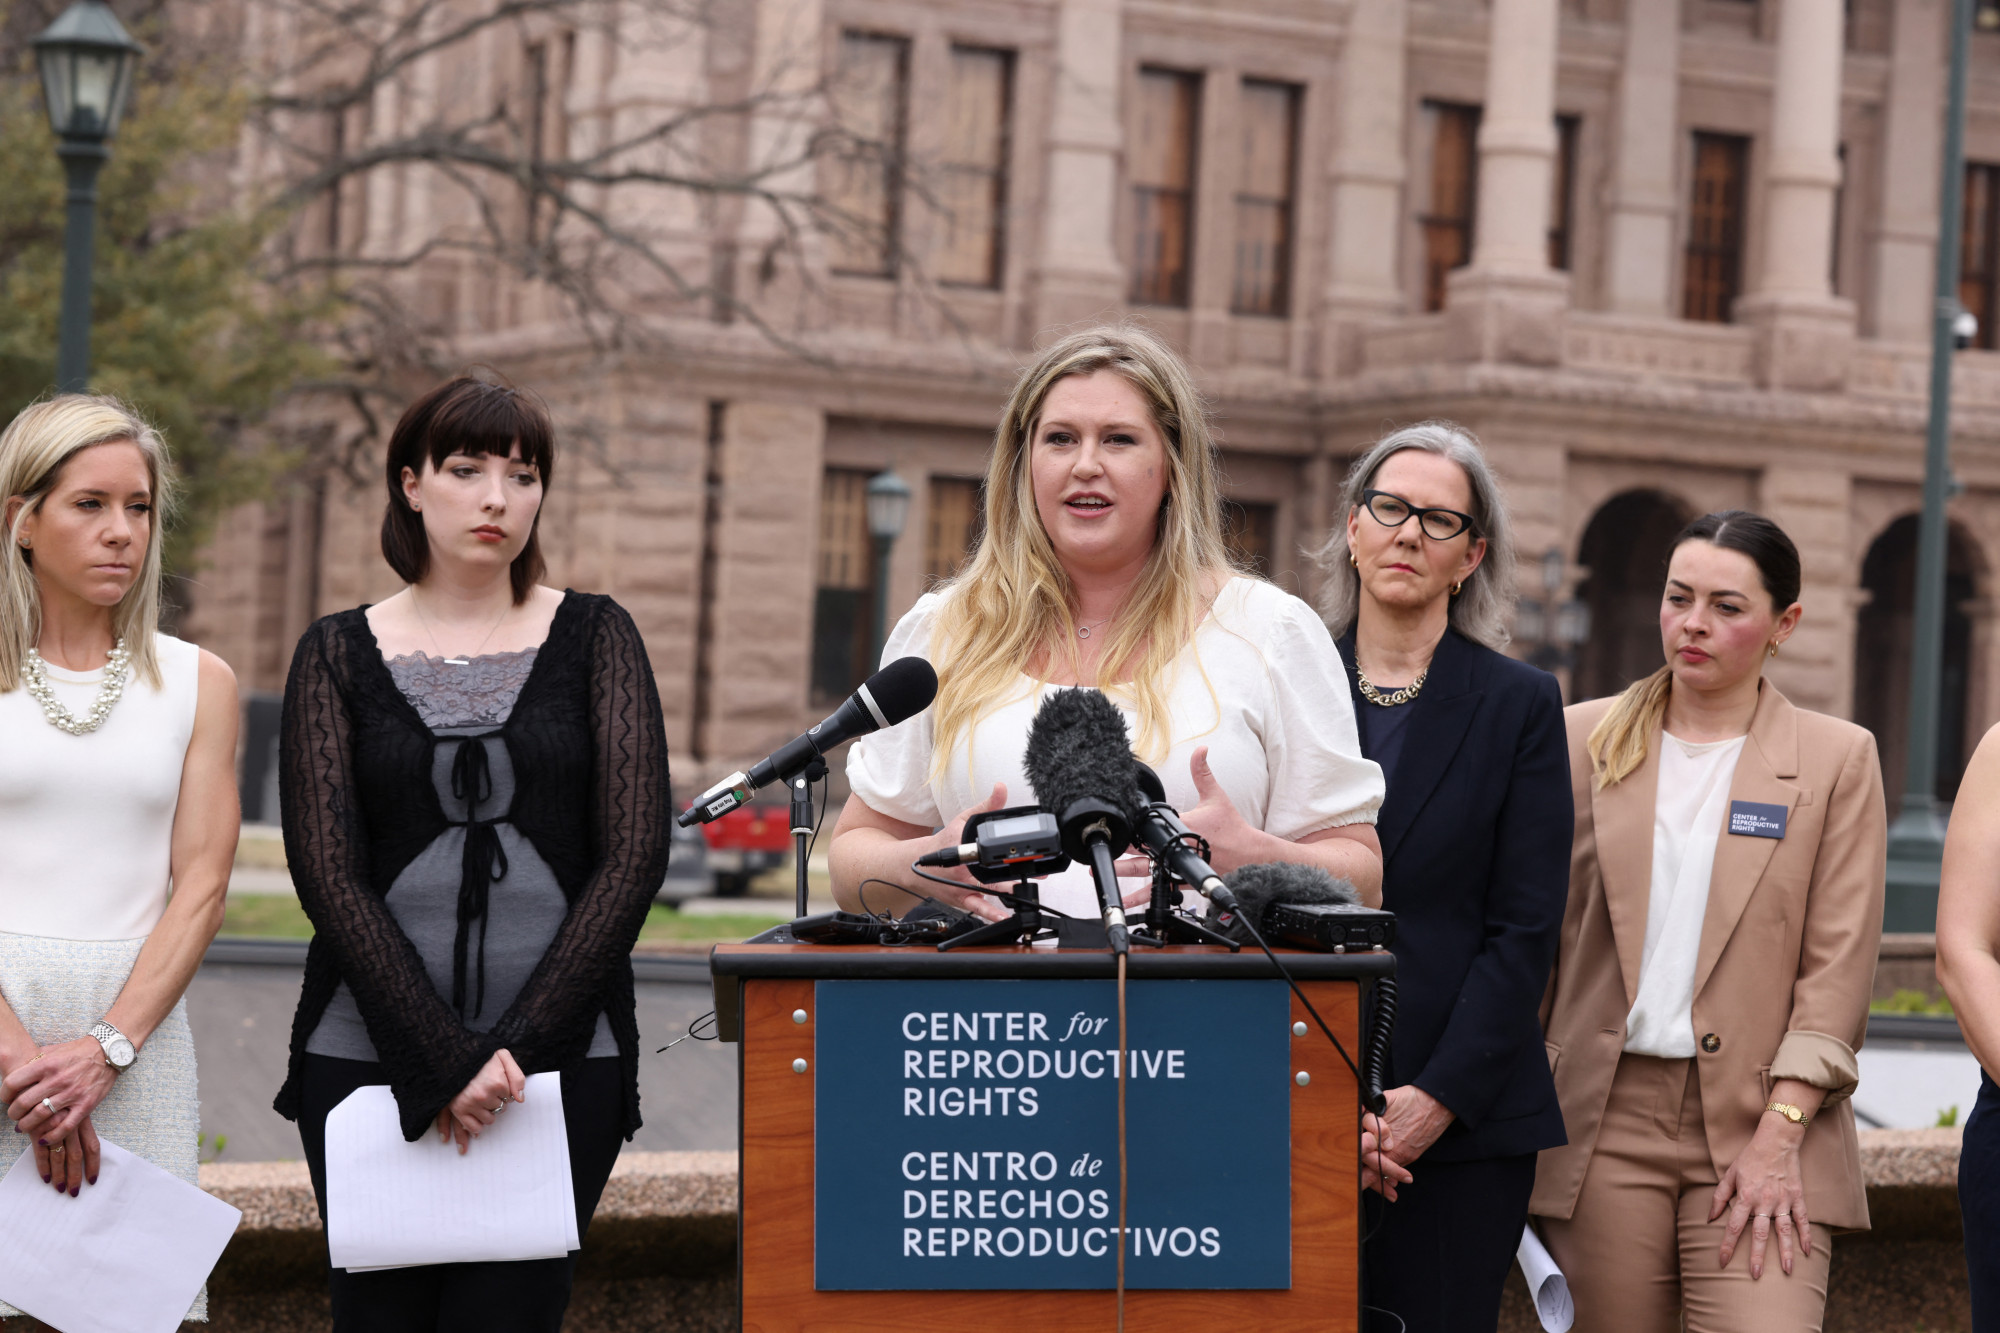 Öt nő perli Texas államot az abortuszhoz való joguk, pontosabban annak ellehetetlenítése miatt